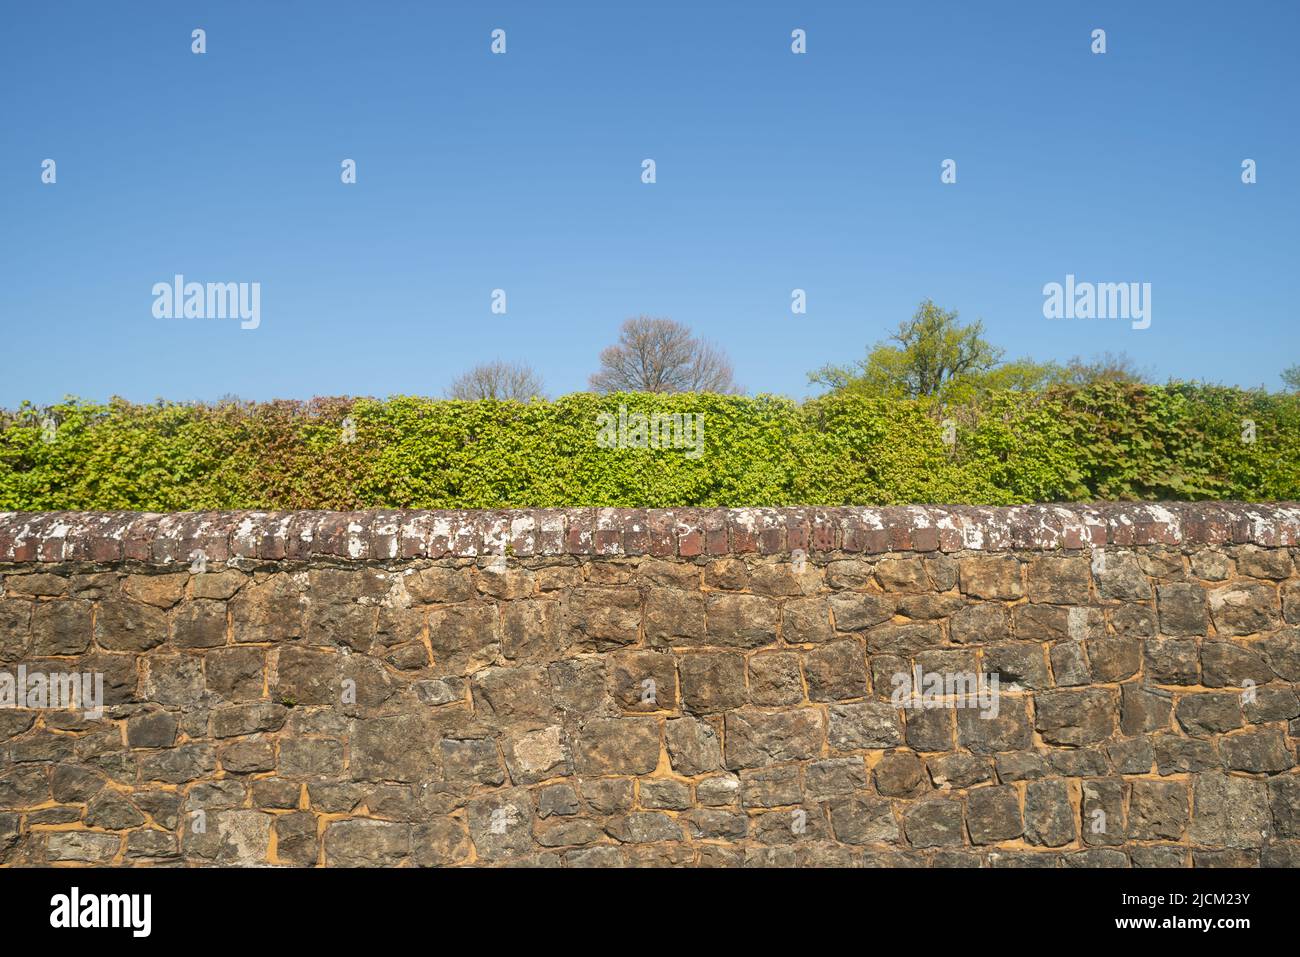 Kentish Ragstone ein harter grauer Kalkstein, der verwendet wurde, um eine starke Grenzmauer mit roten Ziegelsteinen zu errichten, die oben gegen einen blauen Himmel stehen Stockfoto